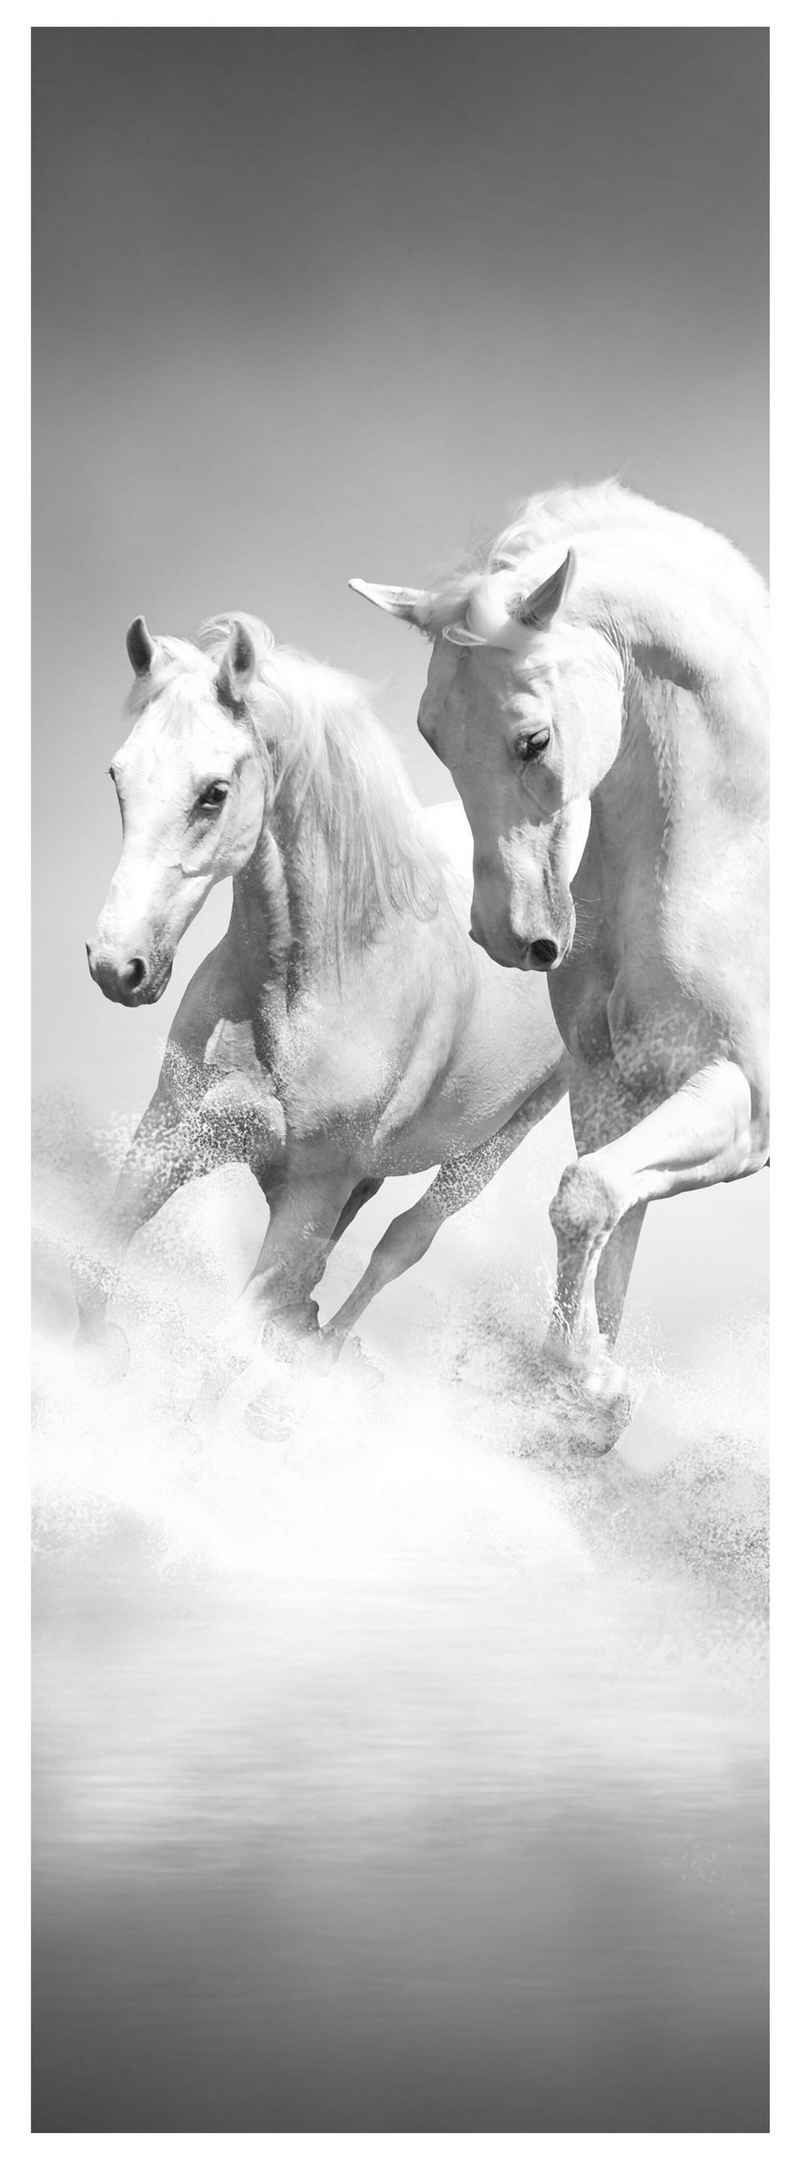 wandmotiv24 Türtapete weiße Traumpferde, glatt, Fototapete, Wandtapete, Motivtapete, matt, selbstklebende Dekorfolie